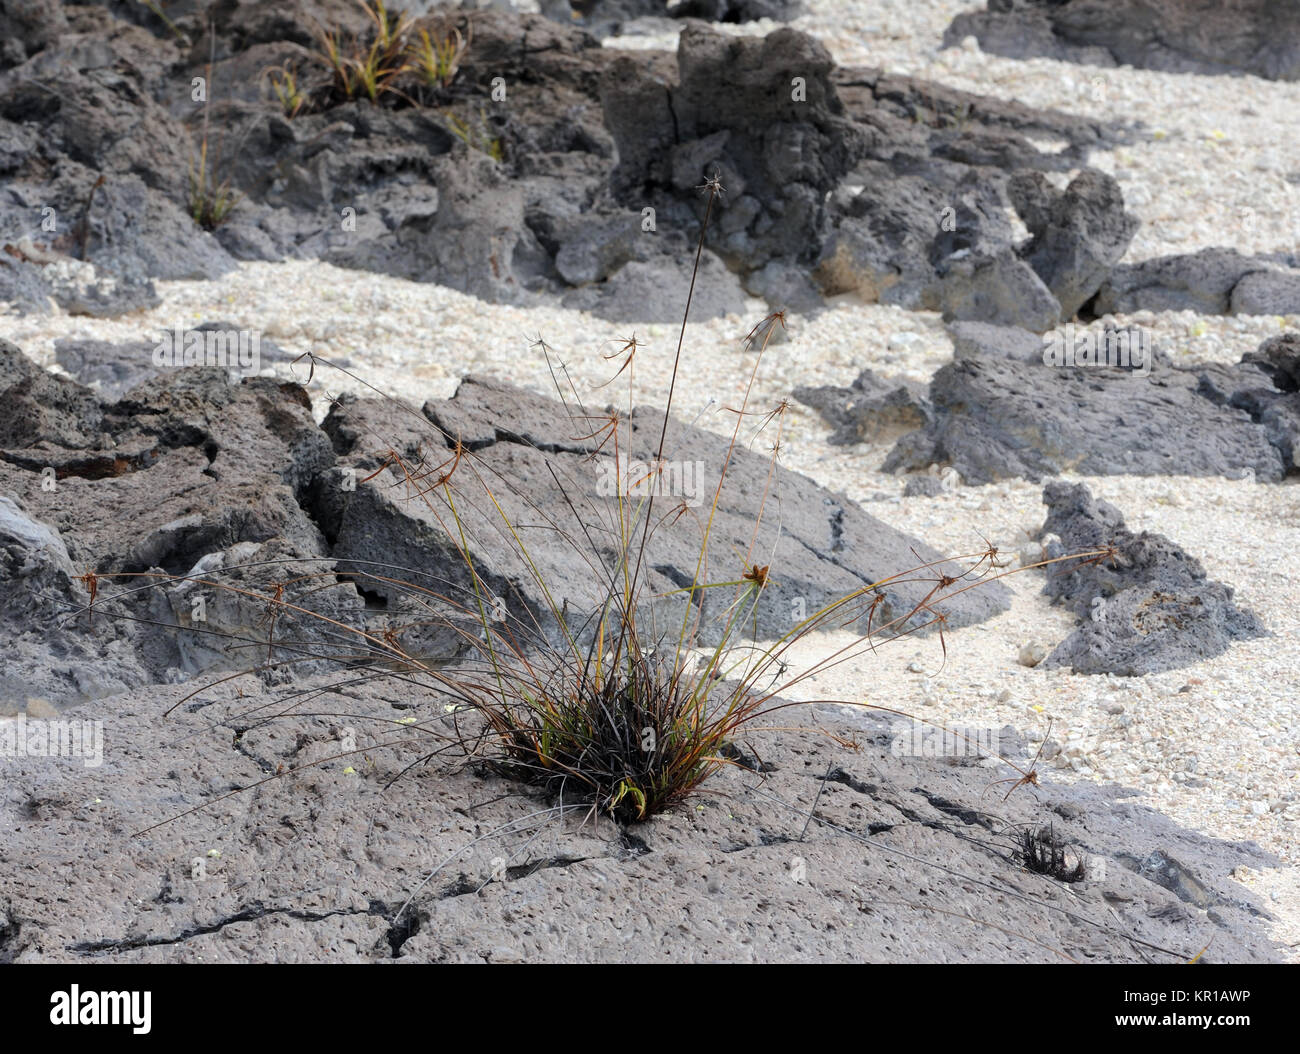 Una sedge pianta cresce nel lago di lava e l'erosione dei minerali di zolfo nella caldera del vulcano Sierra Negra. Isabela, Galapagos, Ecuador Foto Stock